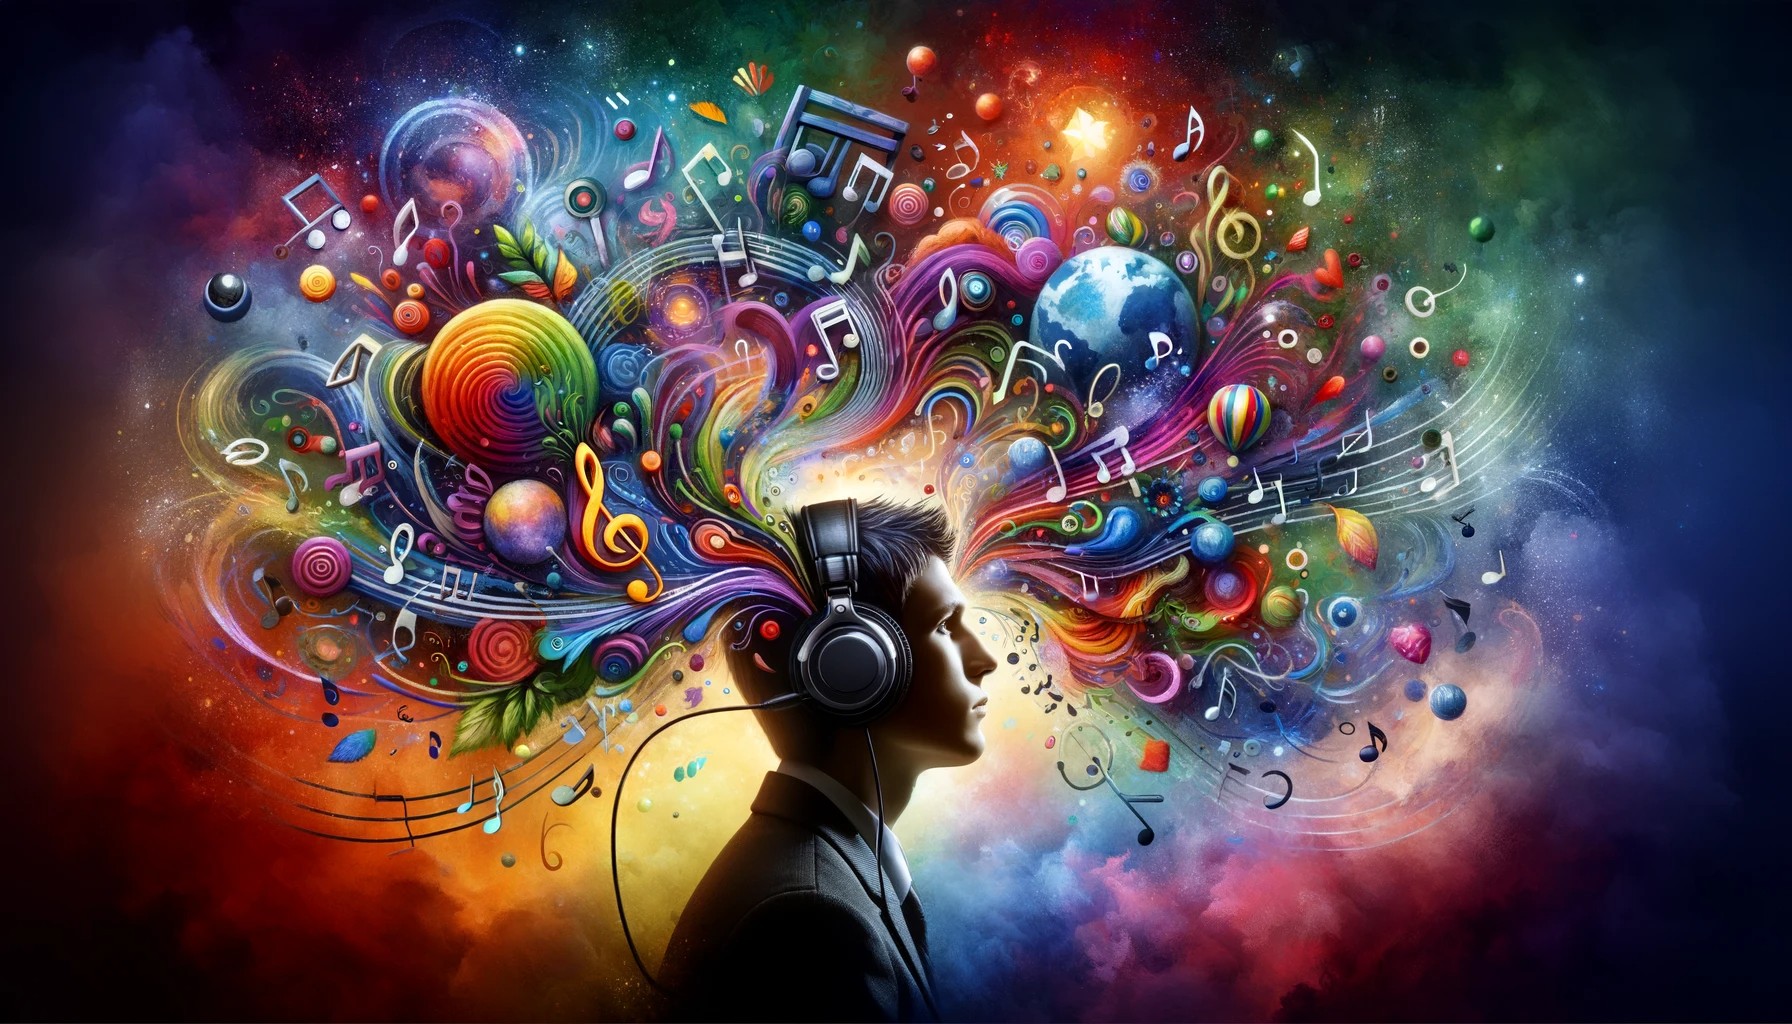 Una persona con auriculares está en el centro de la imagen, rodeada de notas musicales y formas abstractas coloridas que simbolizan emociones como la felicidad, la tristeza y la inspiración. La imagen representa cómo la música influye en la percepción del mundo de la persona, mostrando una mezcla de colores y símbolos musicales integrados de manera surrealista alrededor de ella.